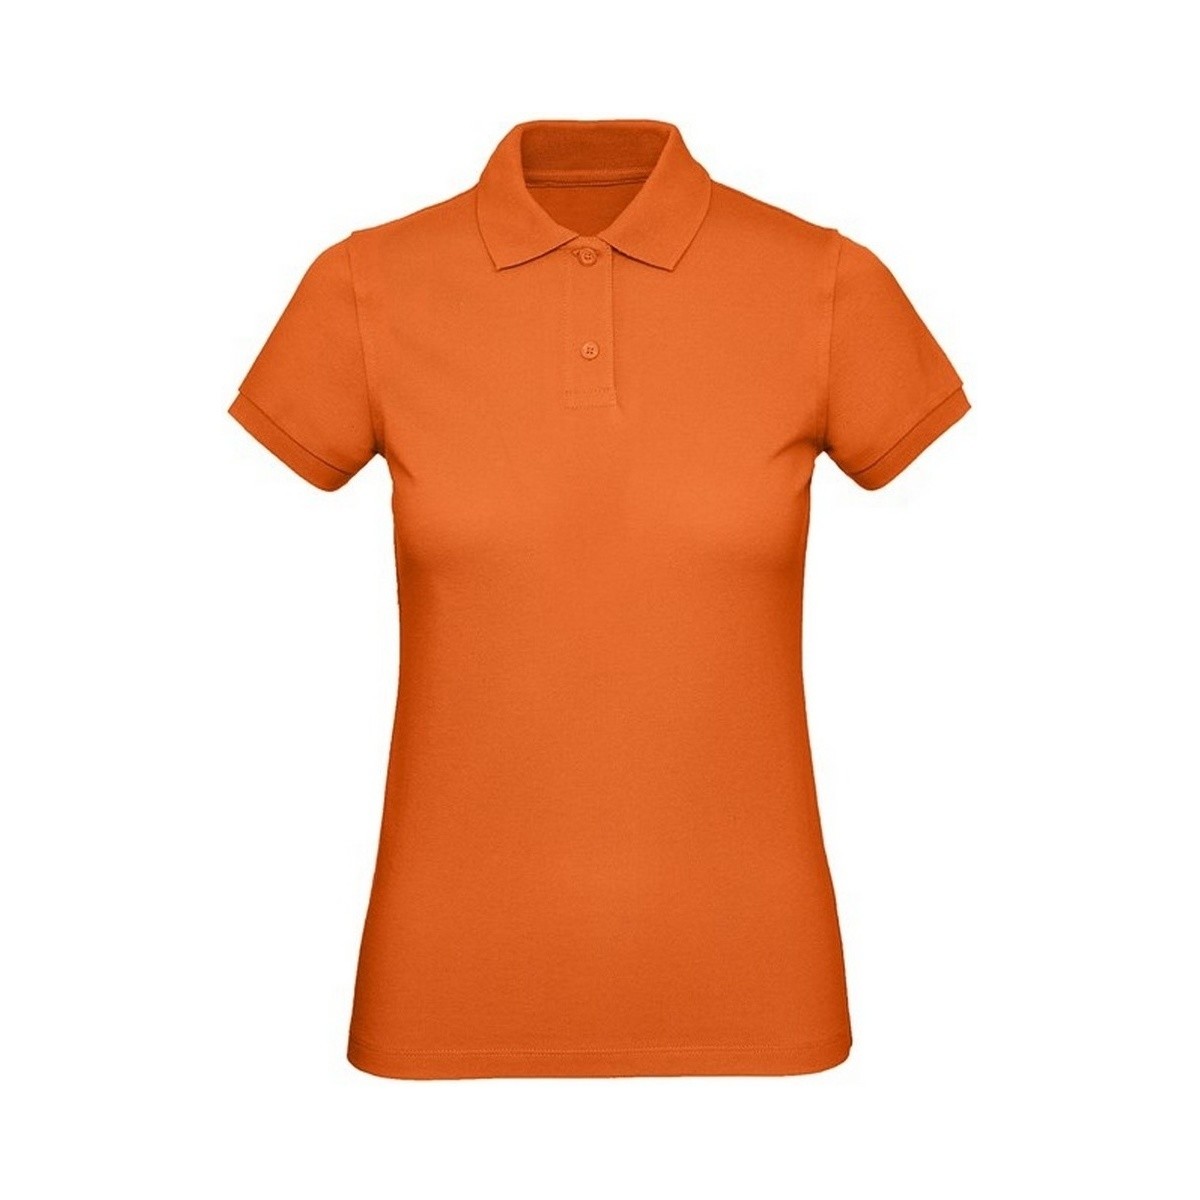 Abbigliamento Donna Camicie B&c Inspire Arancio